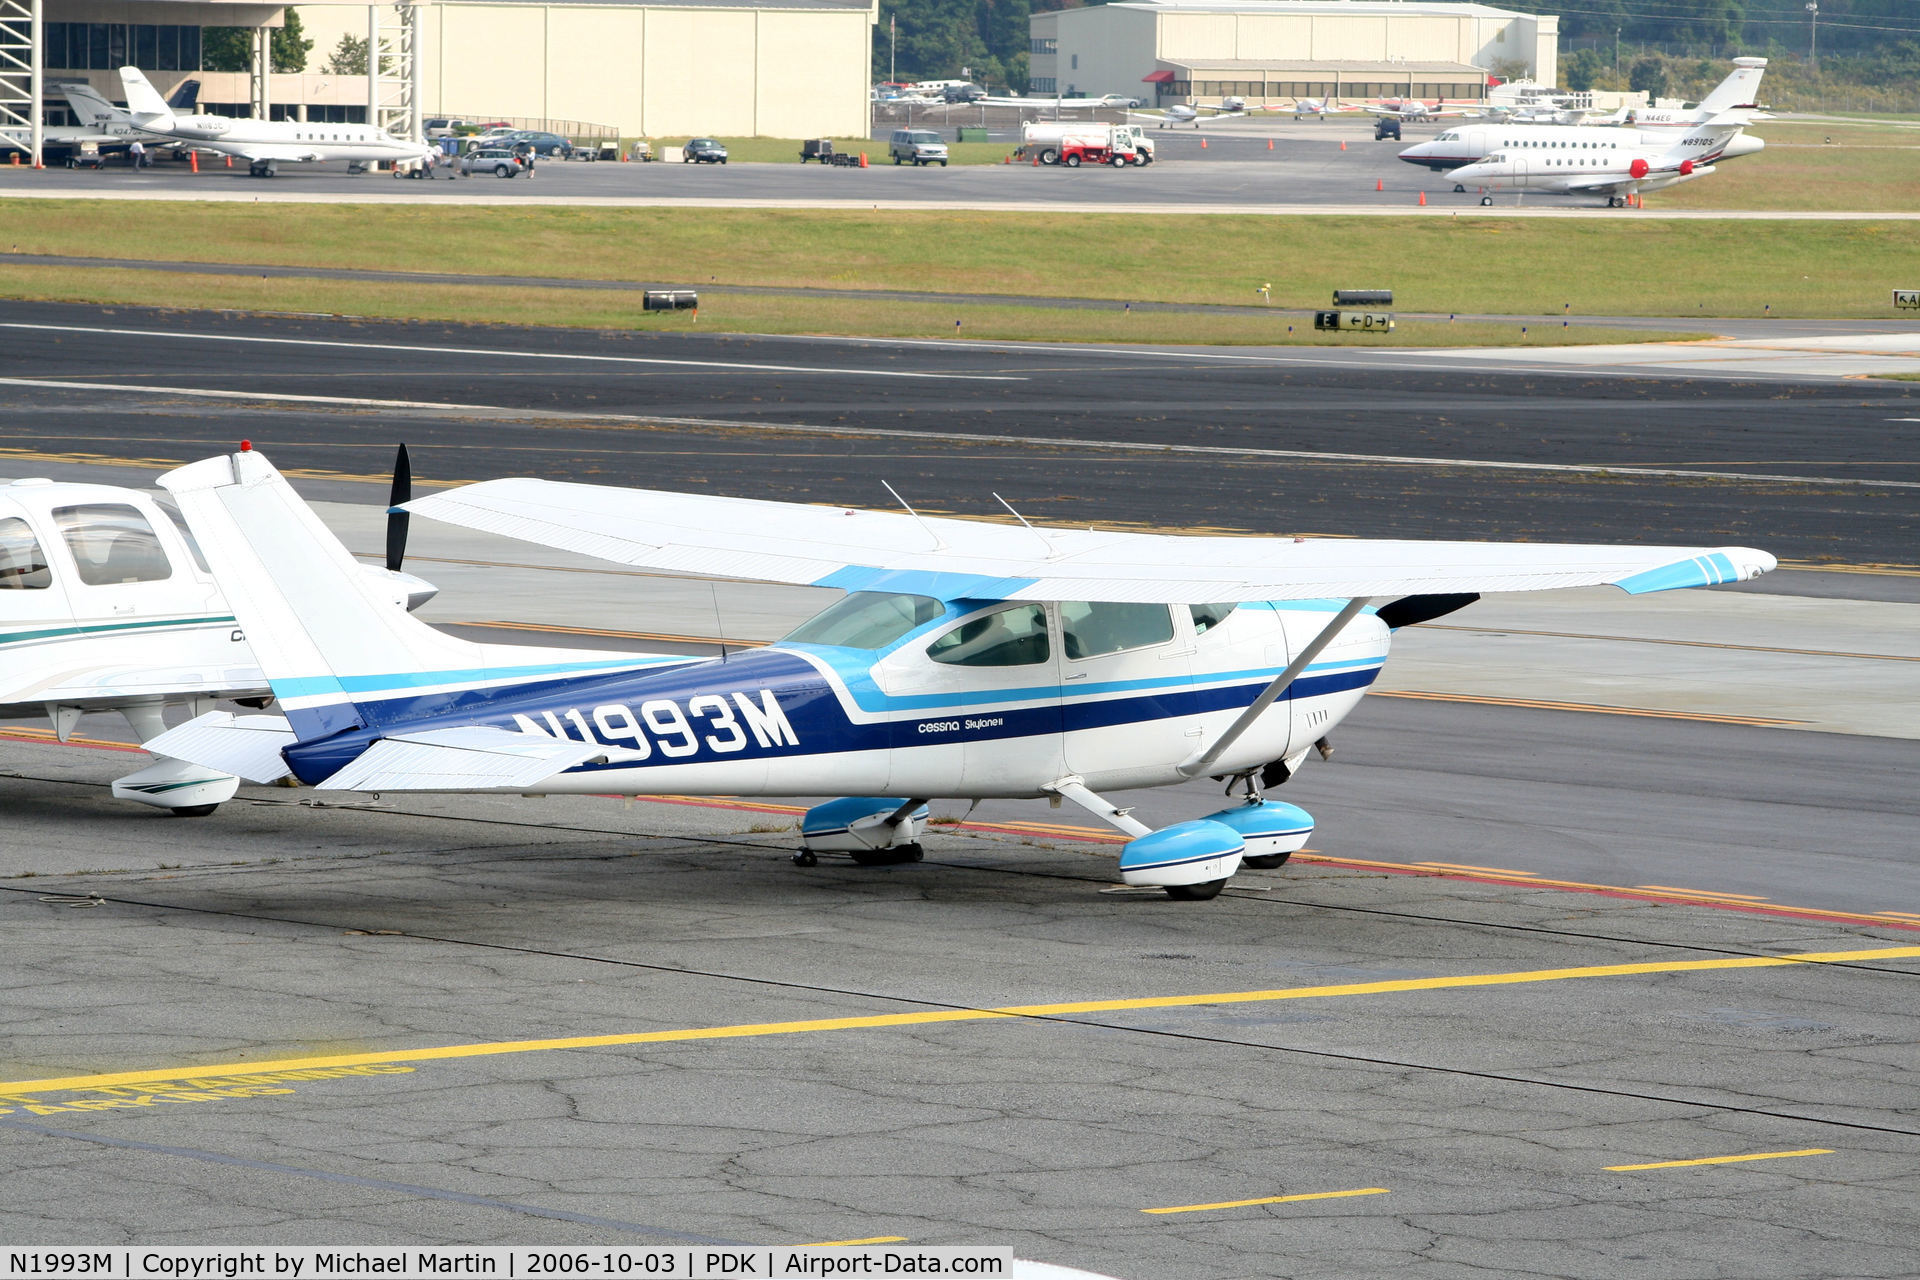 N1993M, 1976 Cessna 182P Skylane C/N 18264522, Tied down @ Epps Air Service